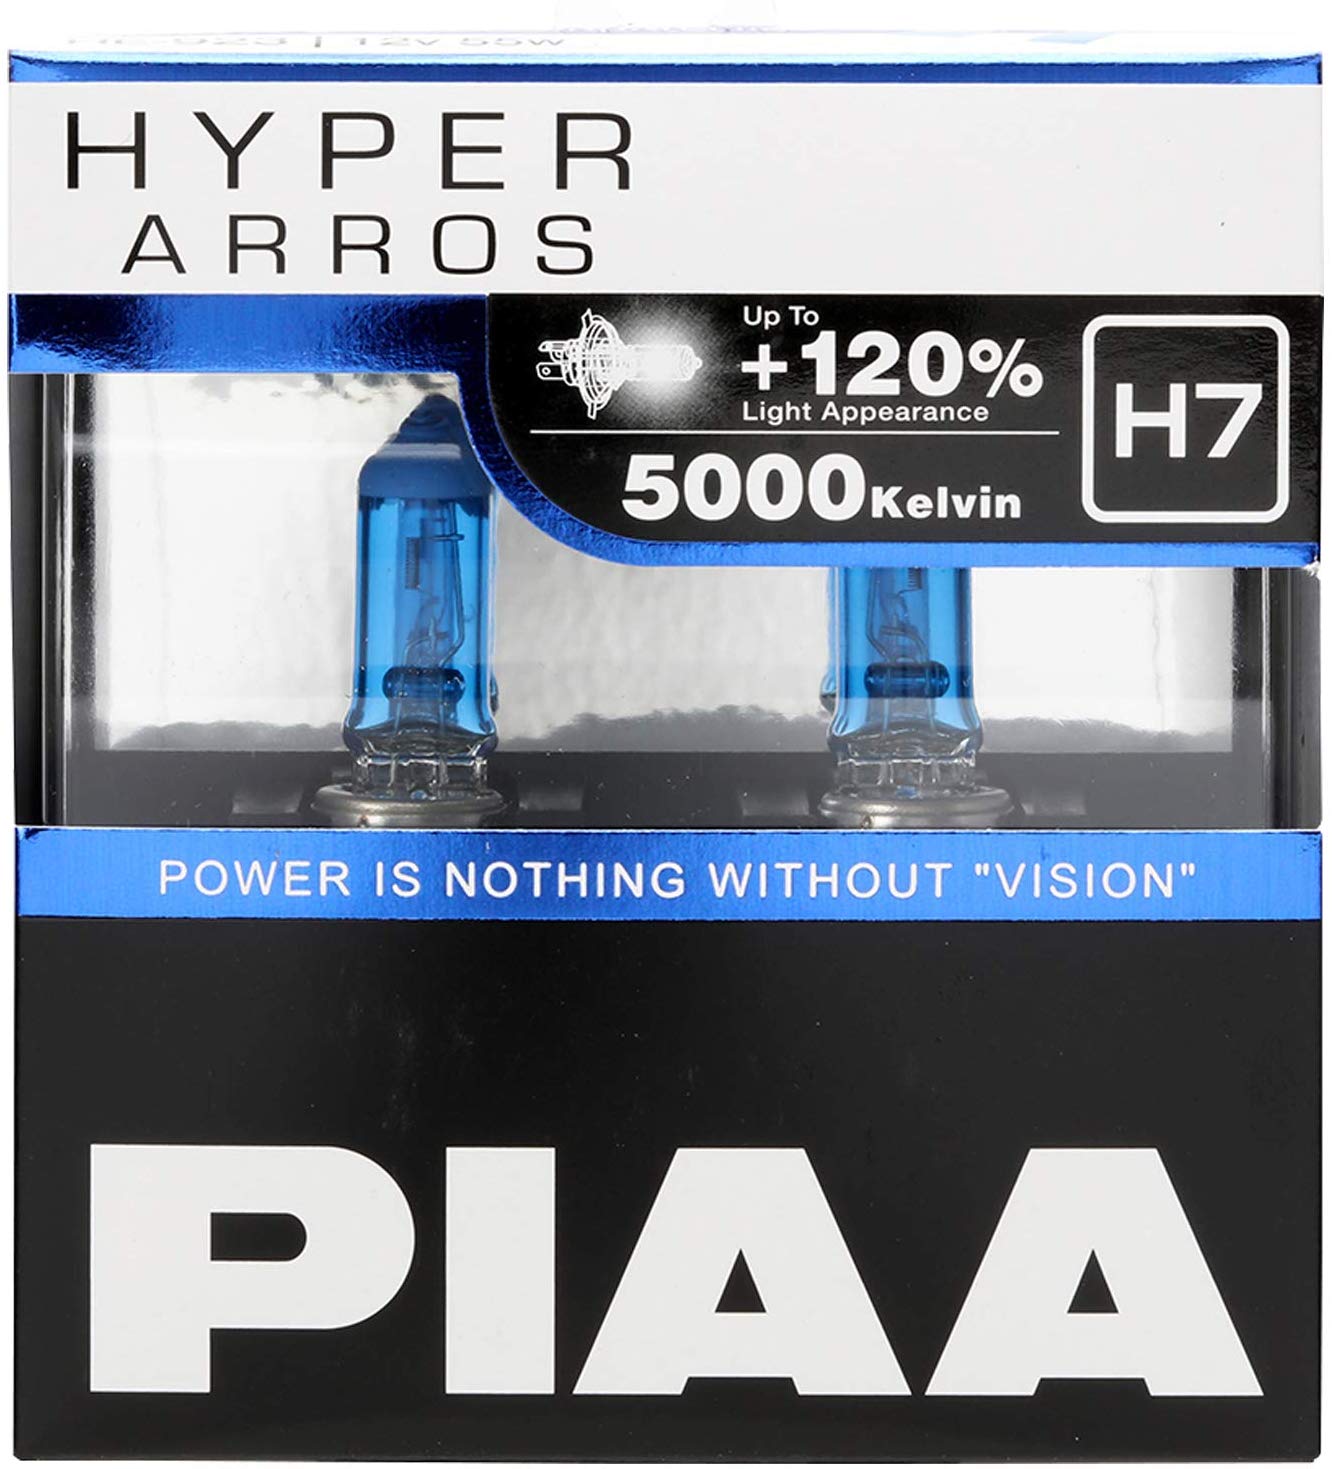 Ampoules PIAA H7 Hyper arros - 5000K